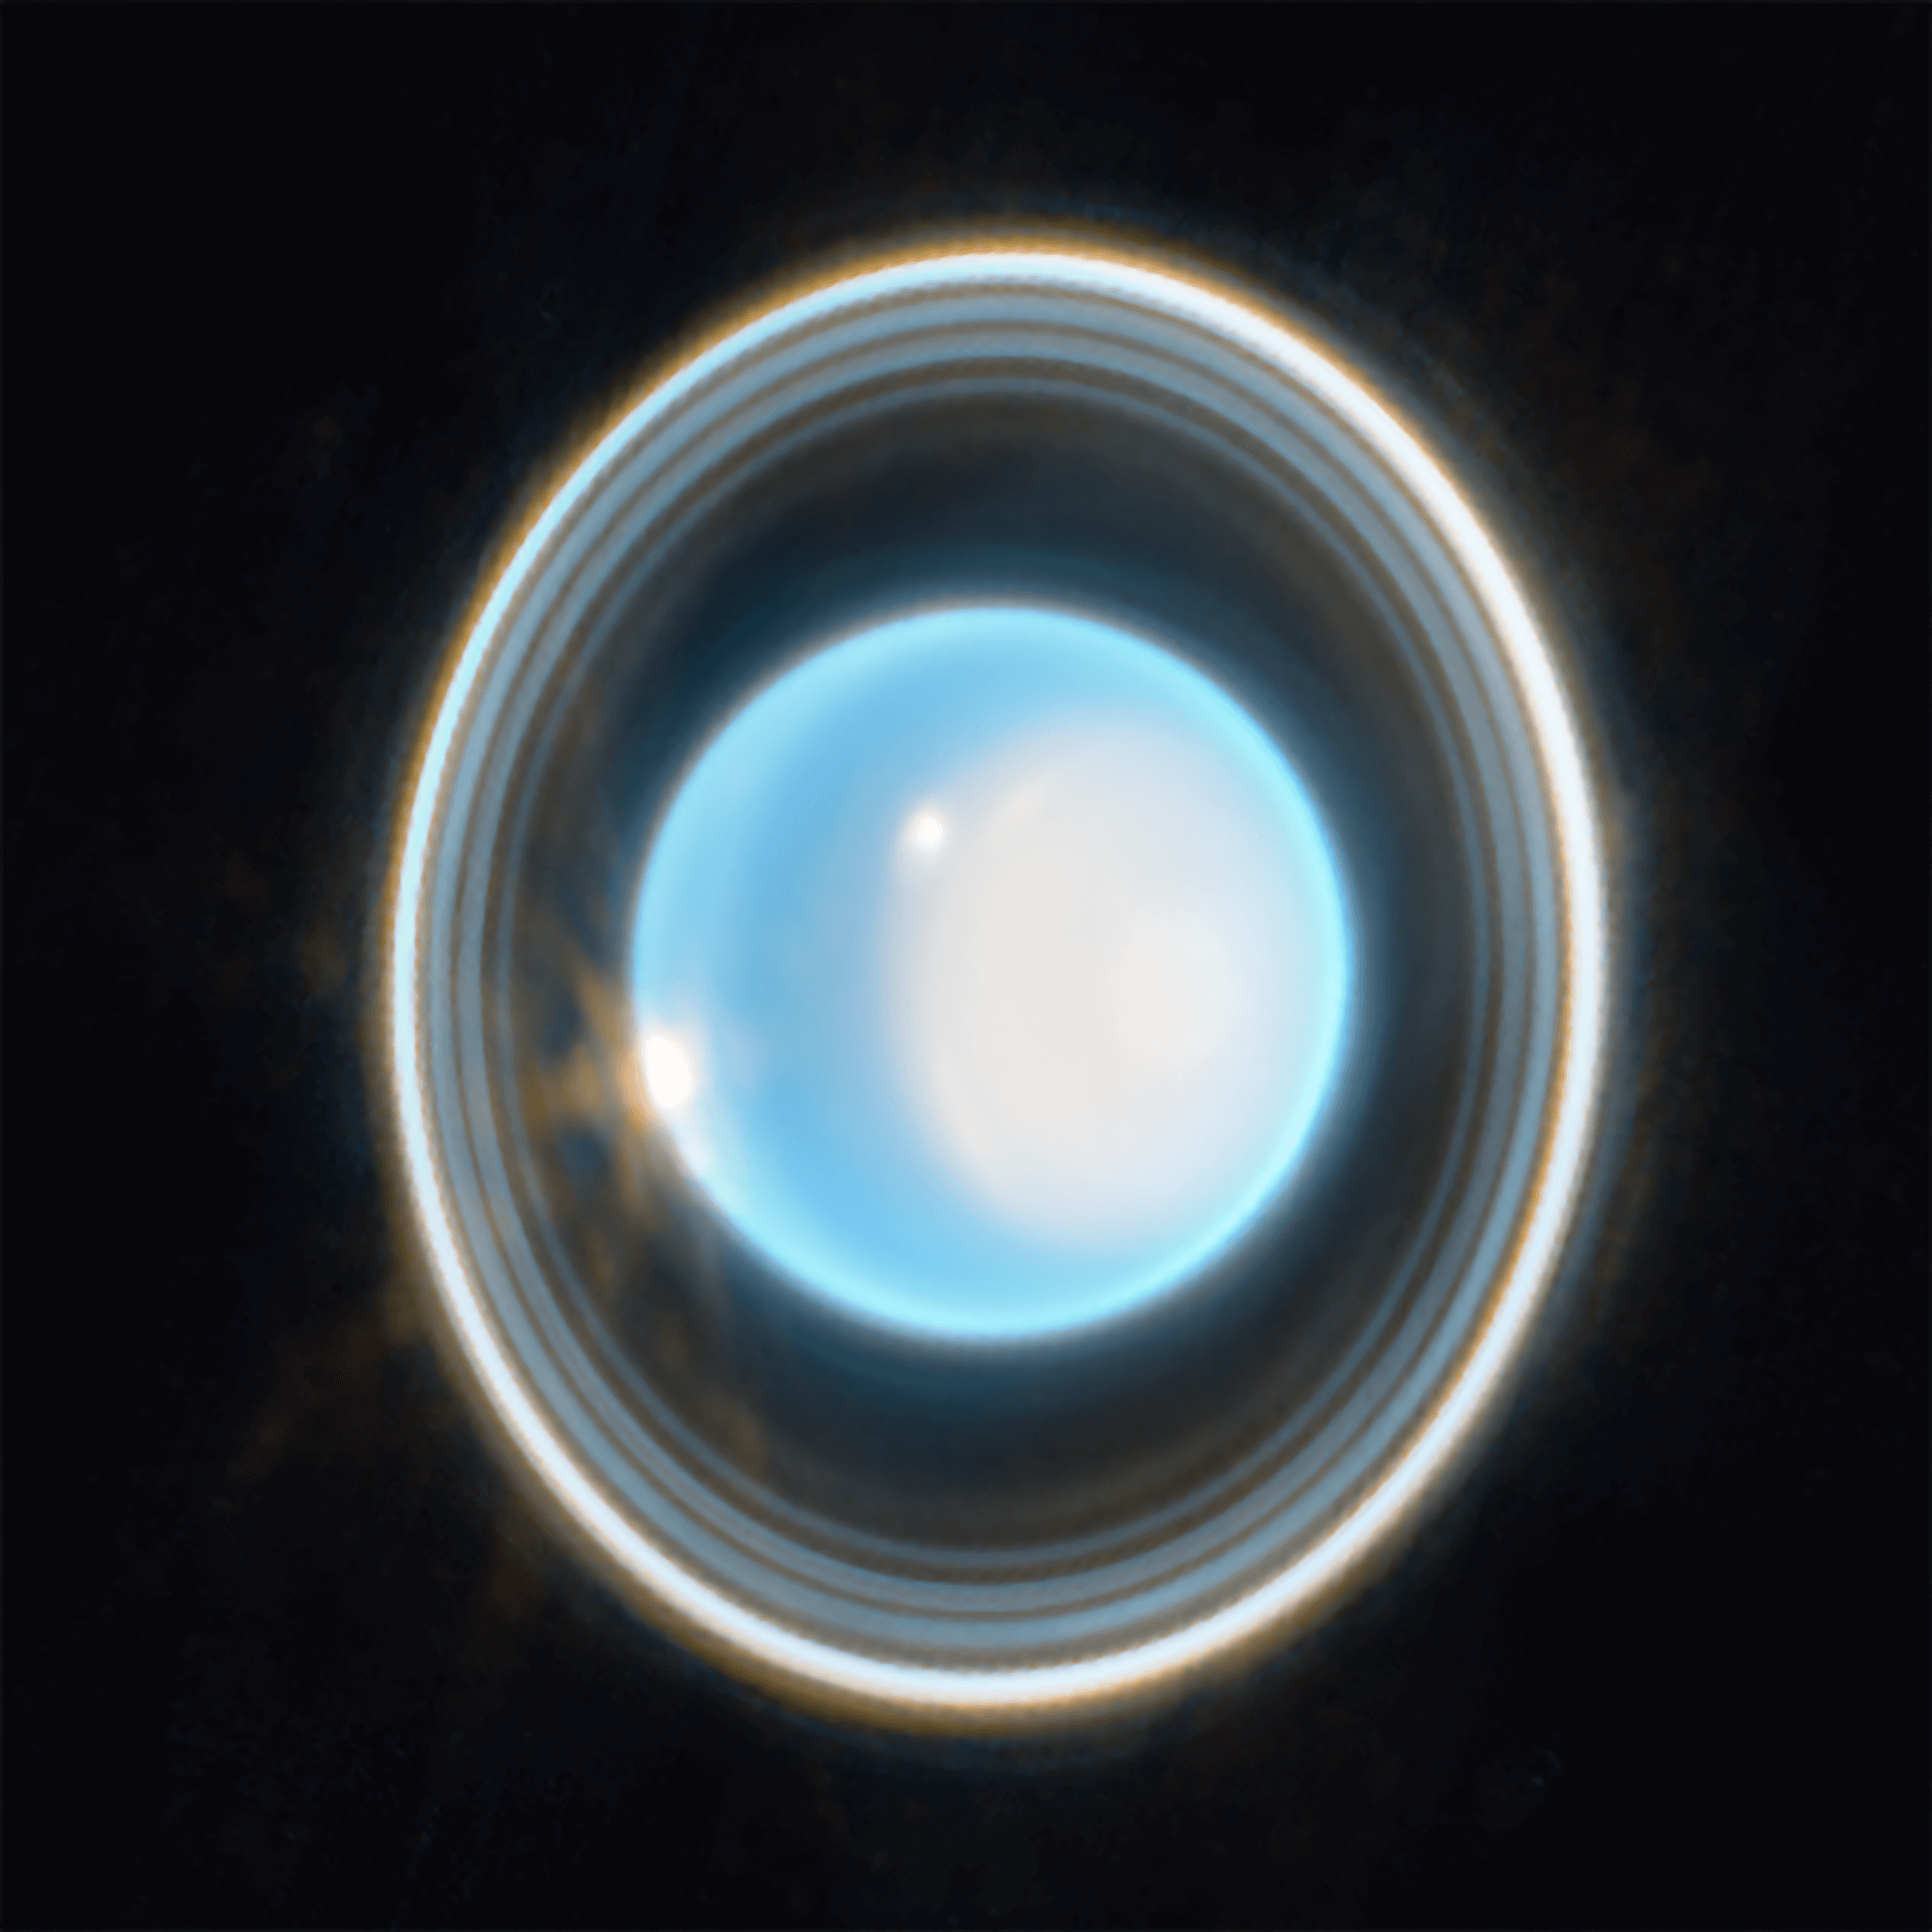 Uranus image taken by JWST